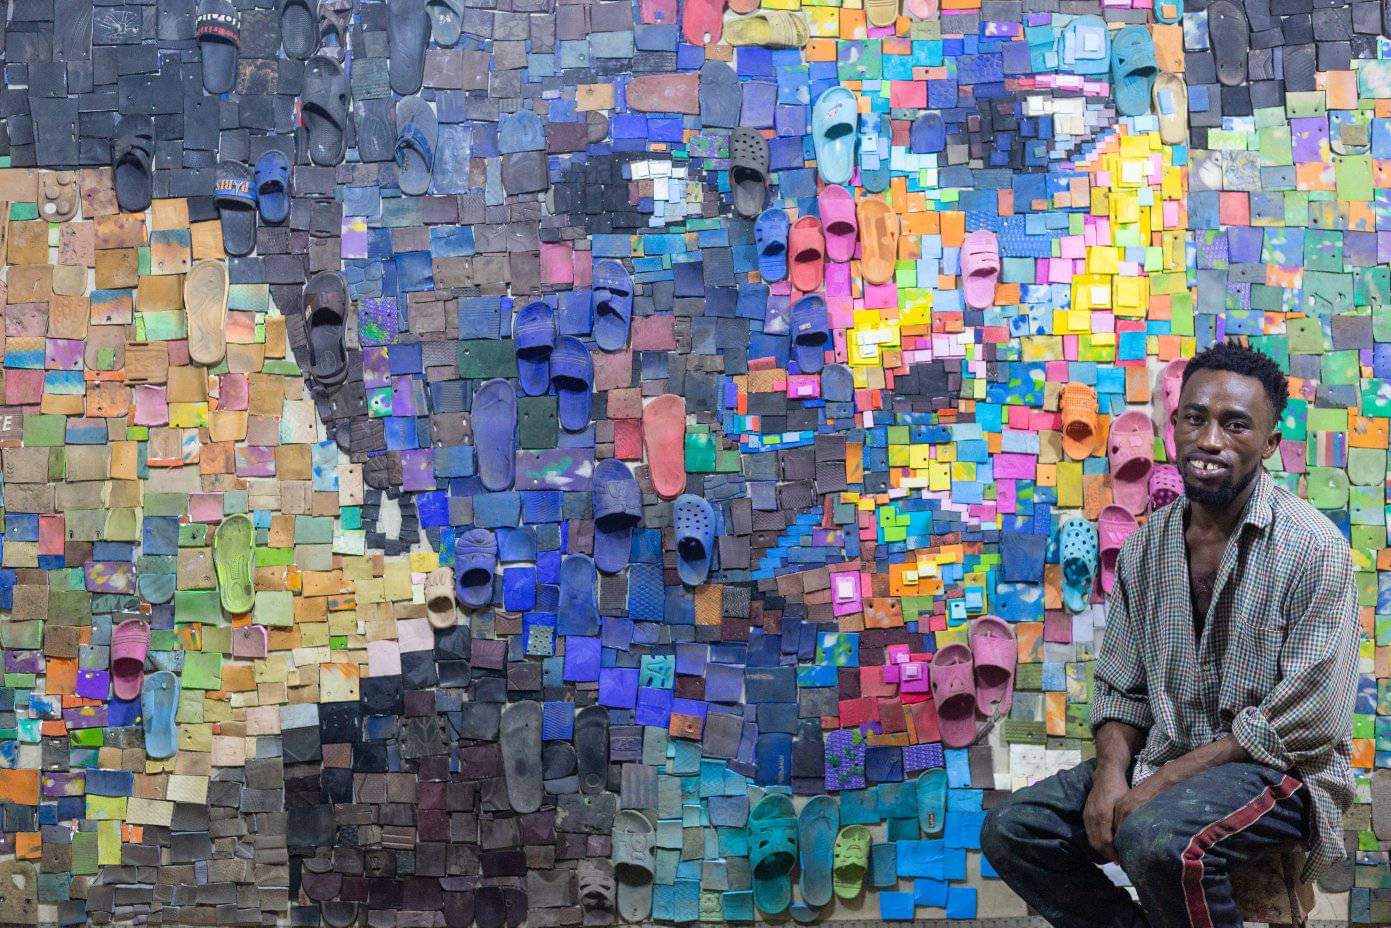 אמן ניגרי יוצר דיוקנאות צבעוניים של בני עמו, על ידי מיחזור כפכפים ישנים